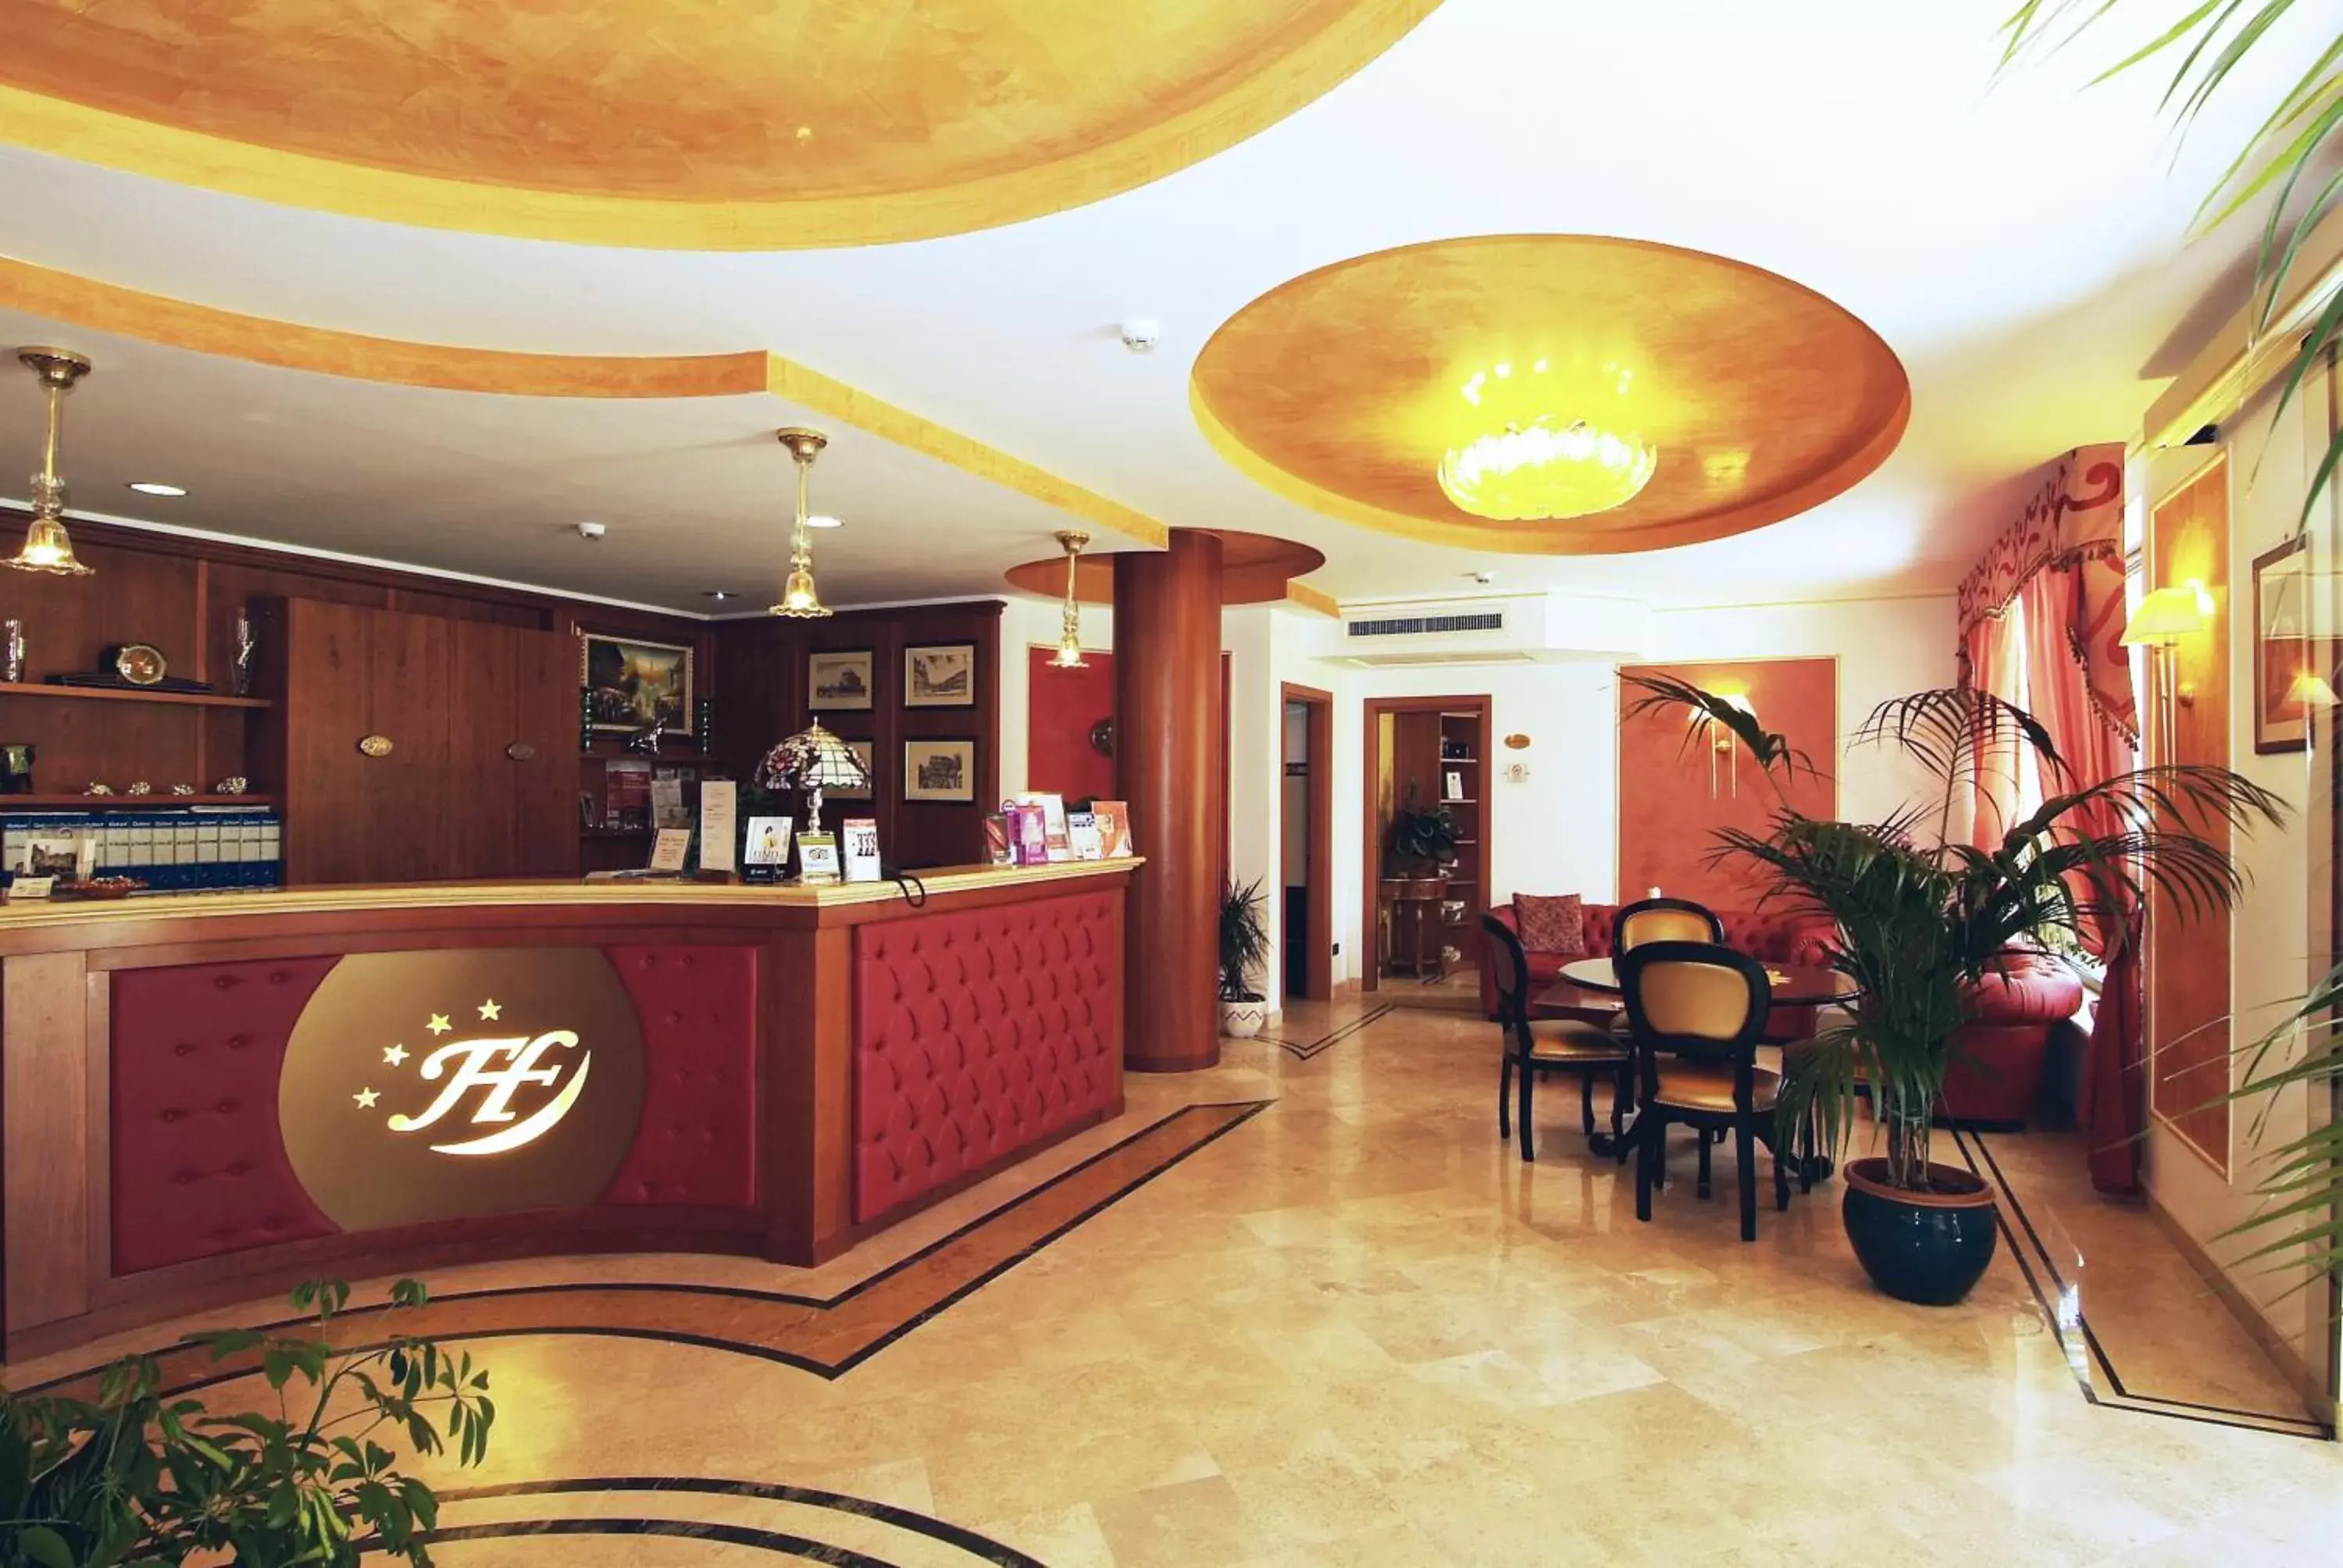 Lounge or bar, Lobby/Reception in Fashion Hotel